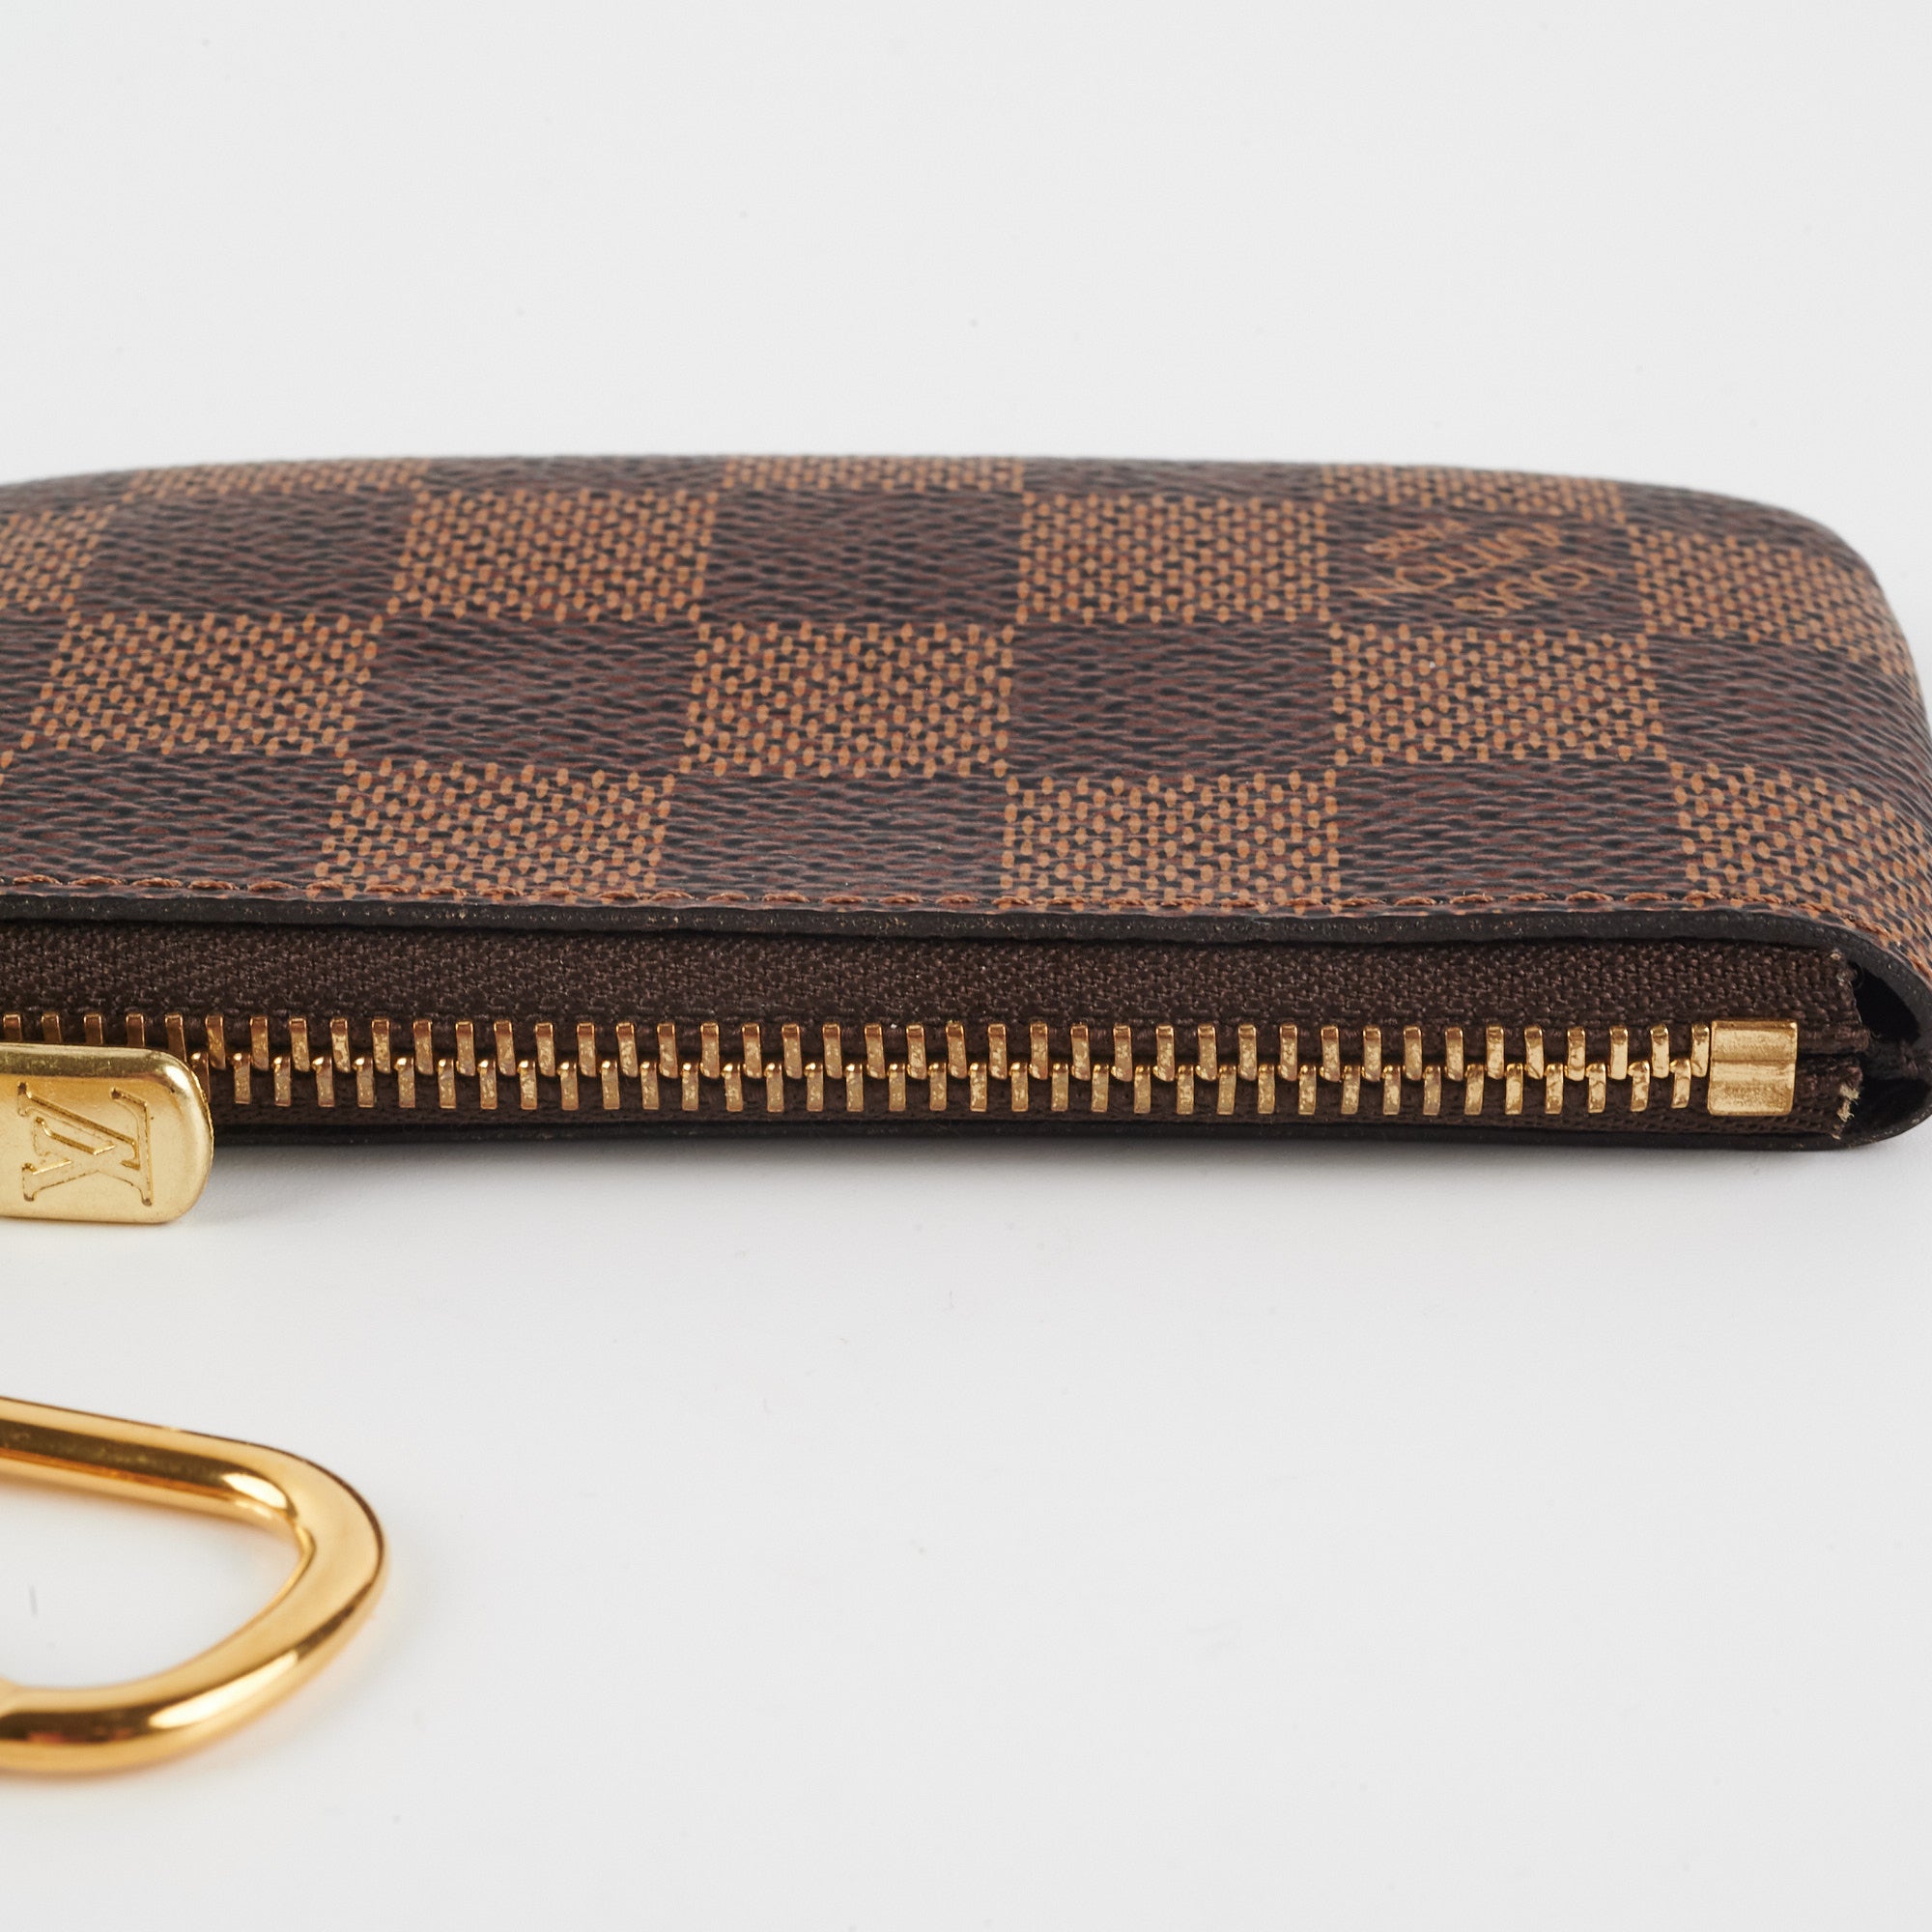 Shop Louis Vuitton Key Pouch (M62650, N62658) by lifeisfun